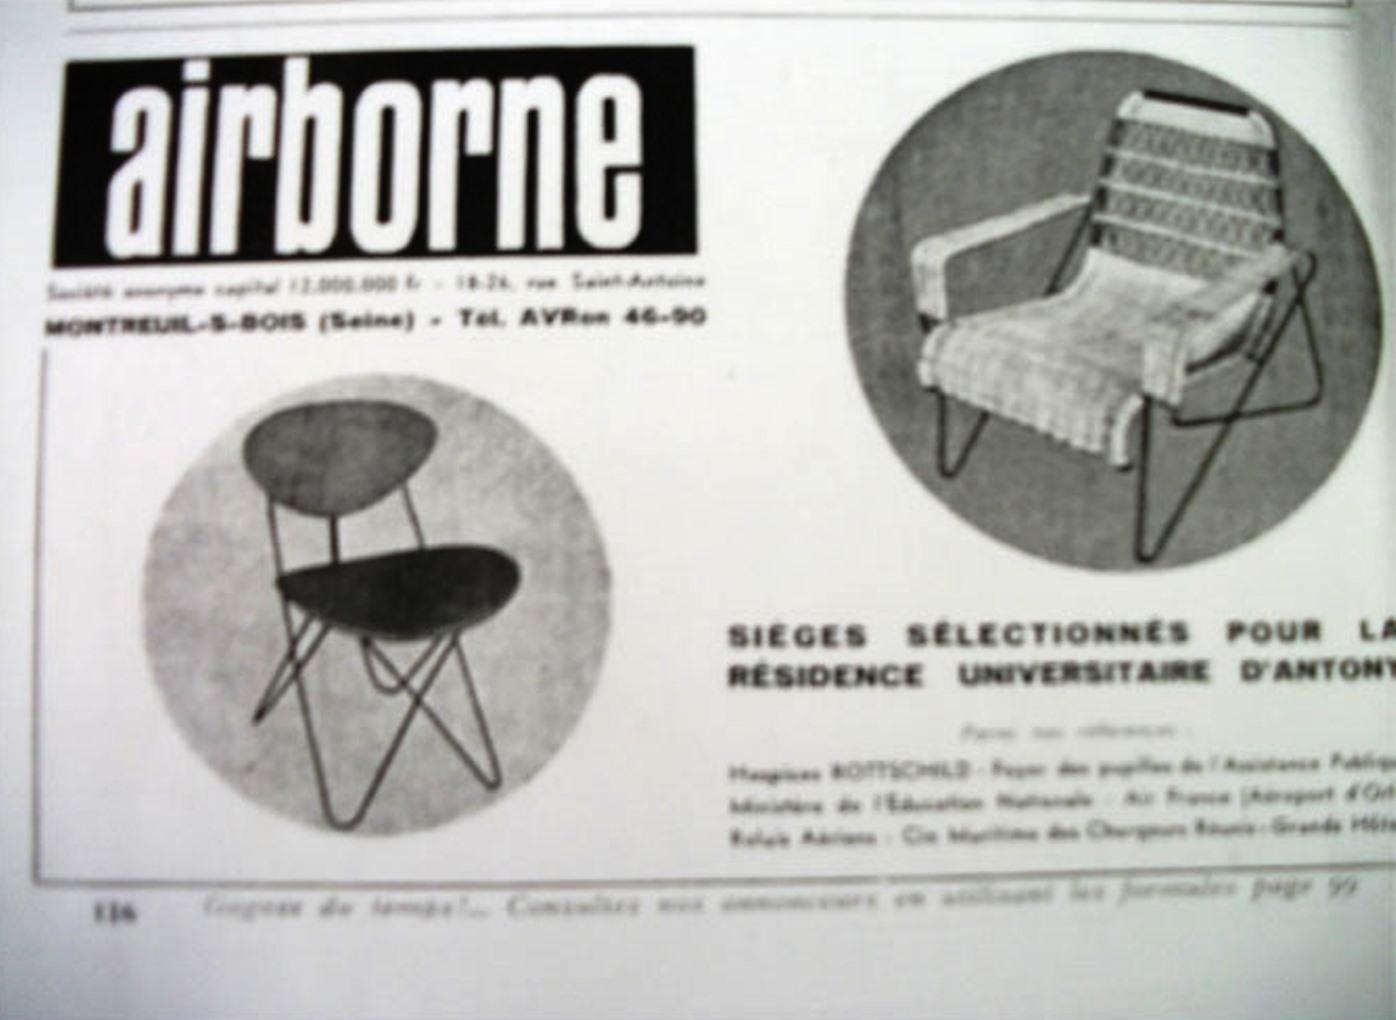 Rare et importante paire de chaises Raoul Guys 'Antony' conçues en 1954 pour la résidence Jean Zay / Antony de l'université de la Cité à Paris. Ce superbe modèle a été produit simultanément par 